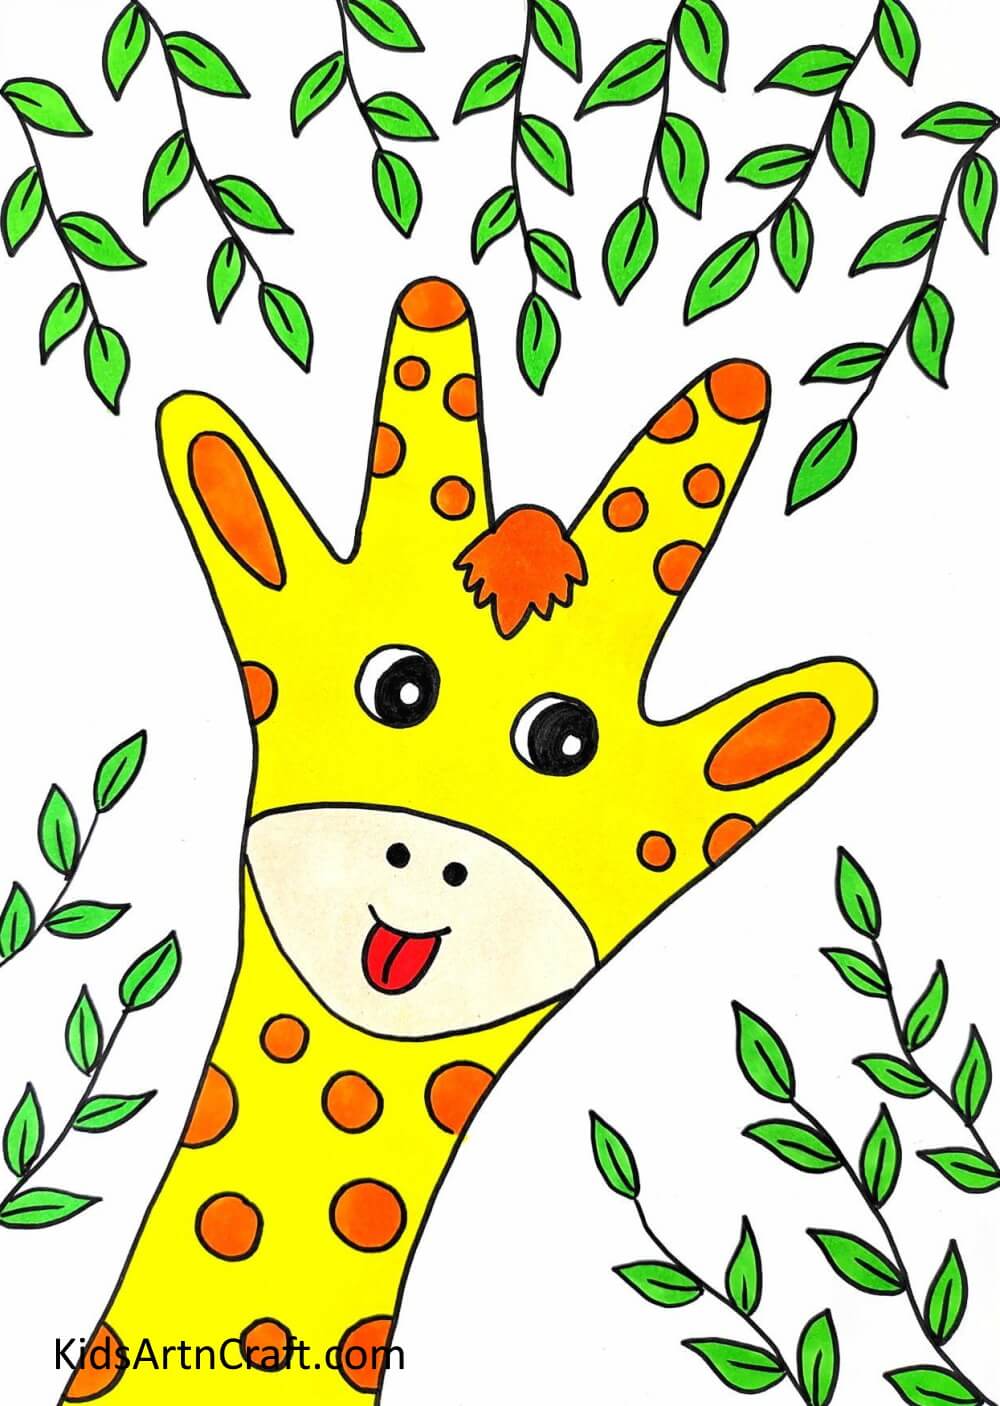 Making Handprint Giraffe Picture For Kids